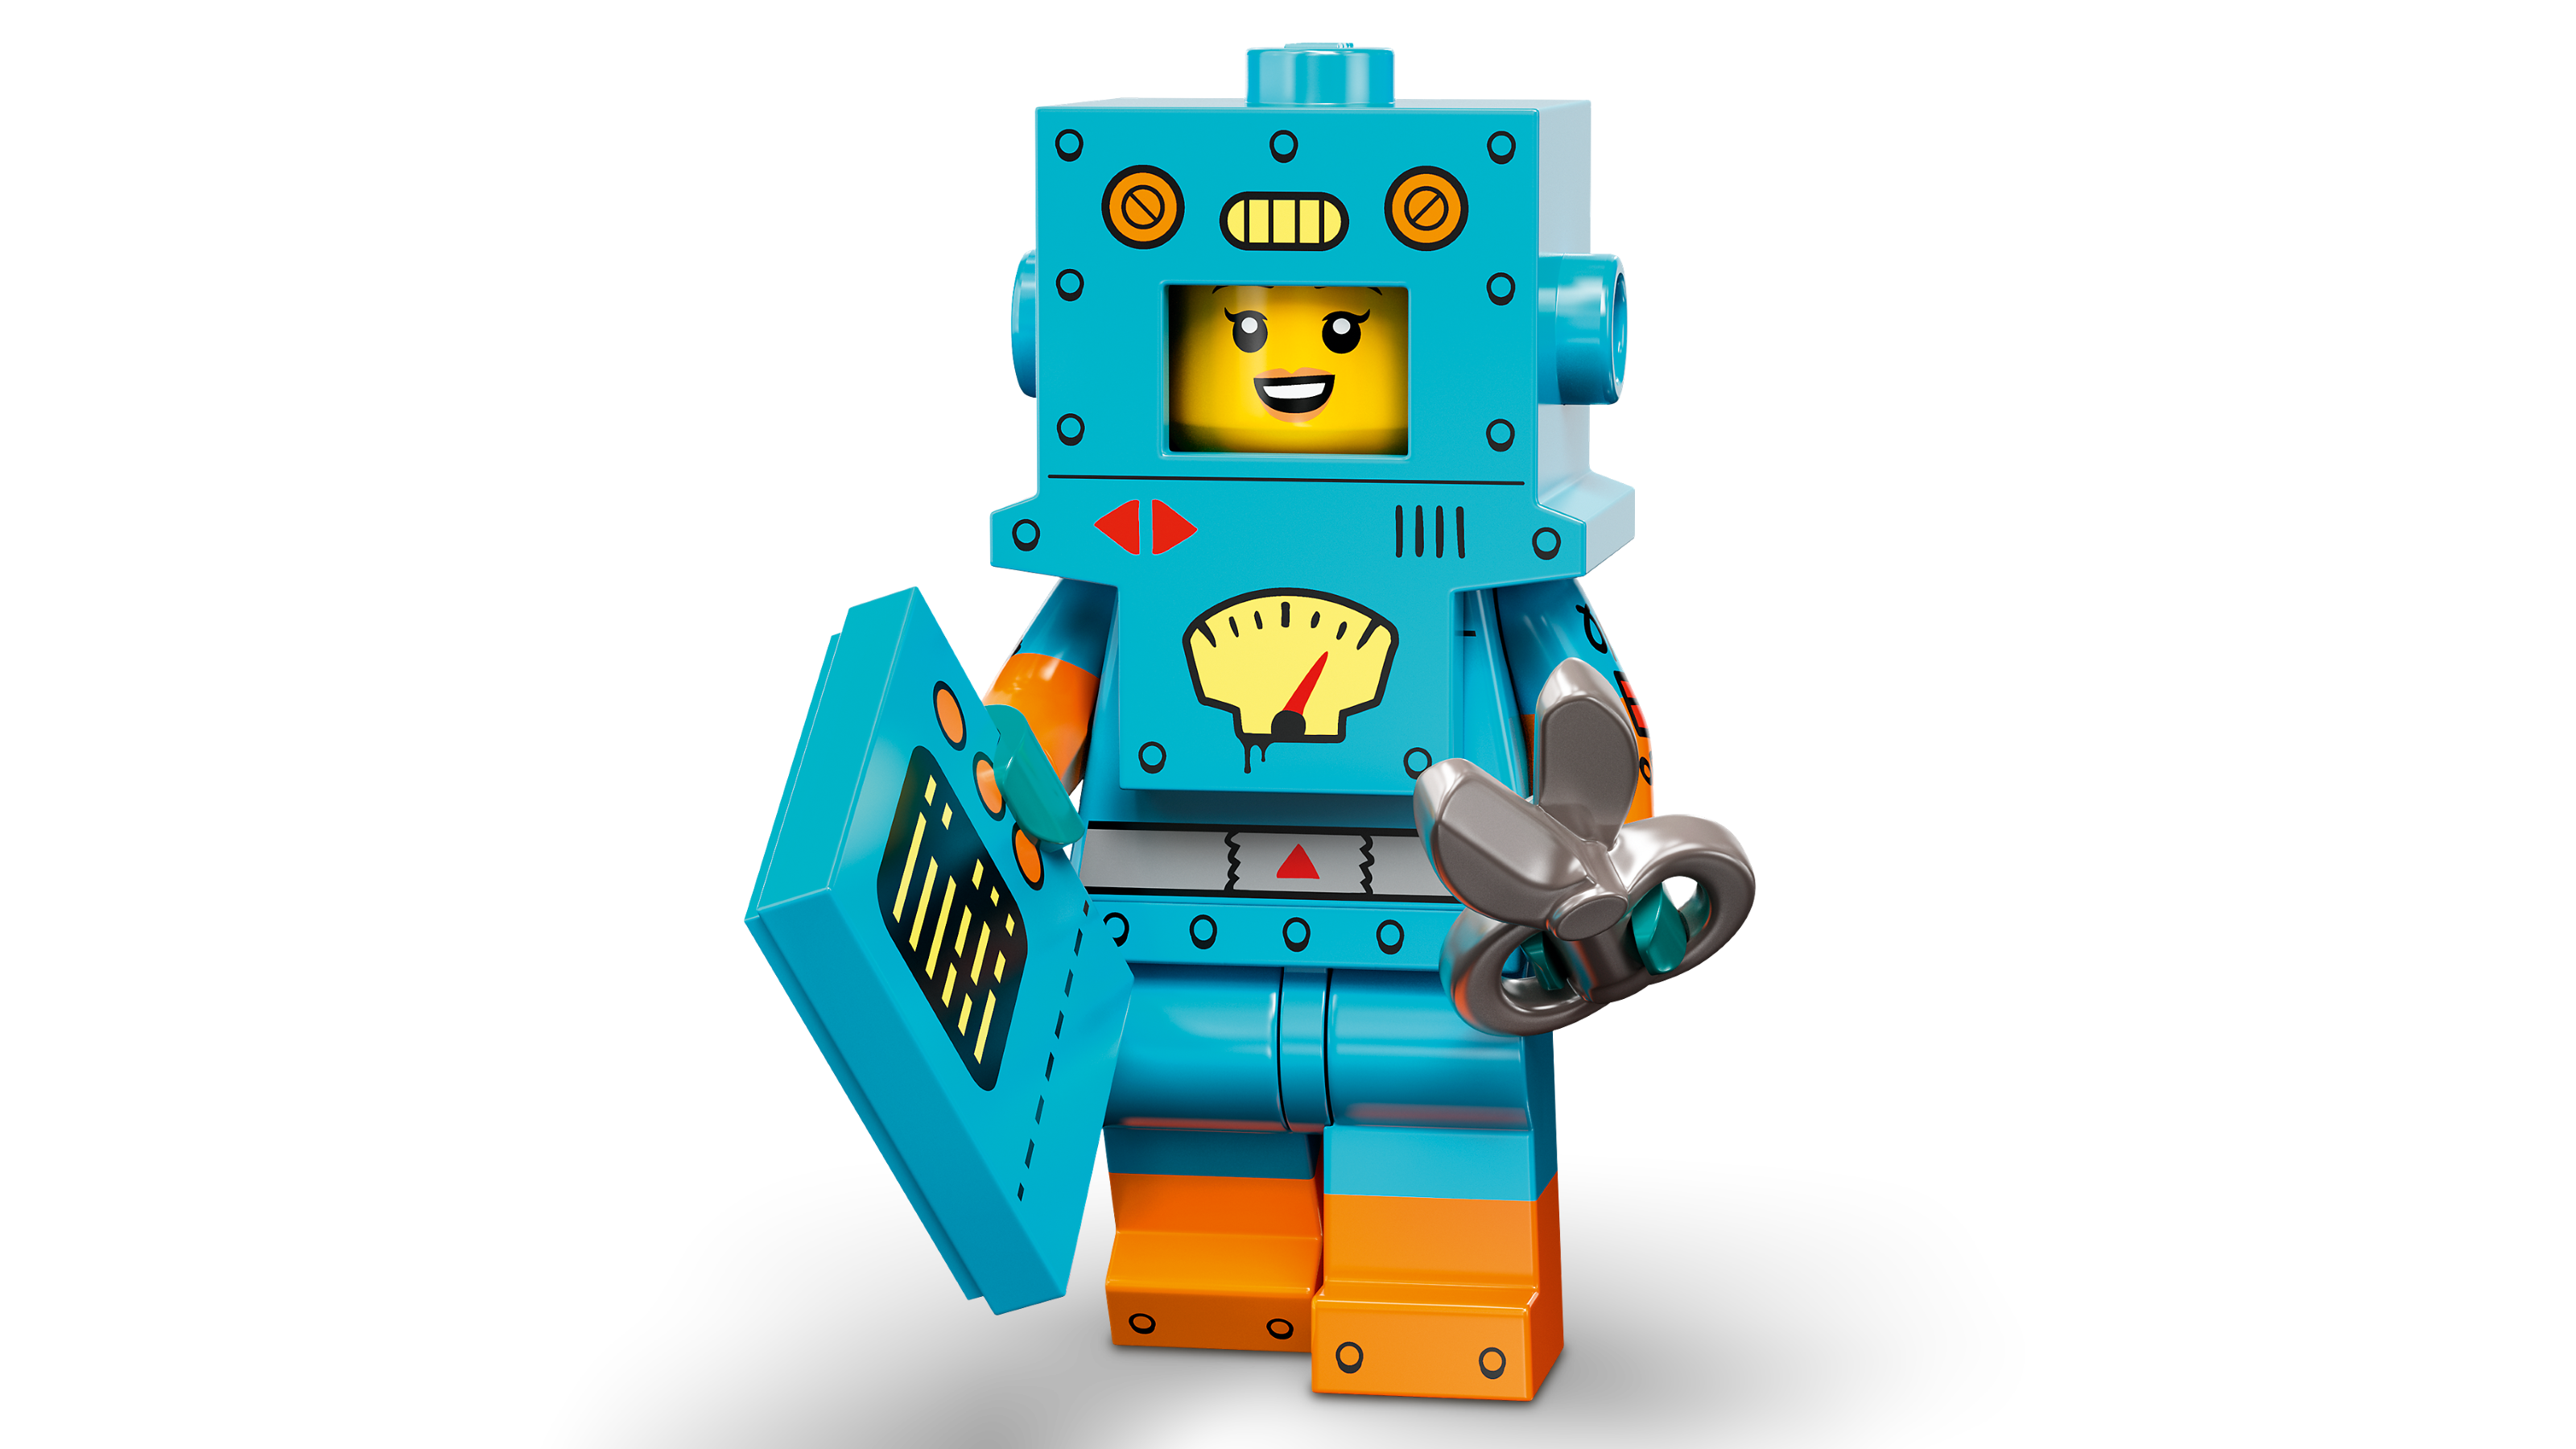 LEGO Minifigures Series 23 Paquete de 6 juguetes de construcción 71036;  regalo coleccionable para niños y niñas a partir de 5 años (paquete de 6